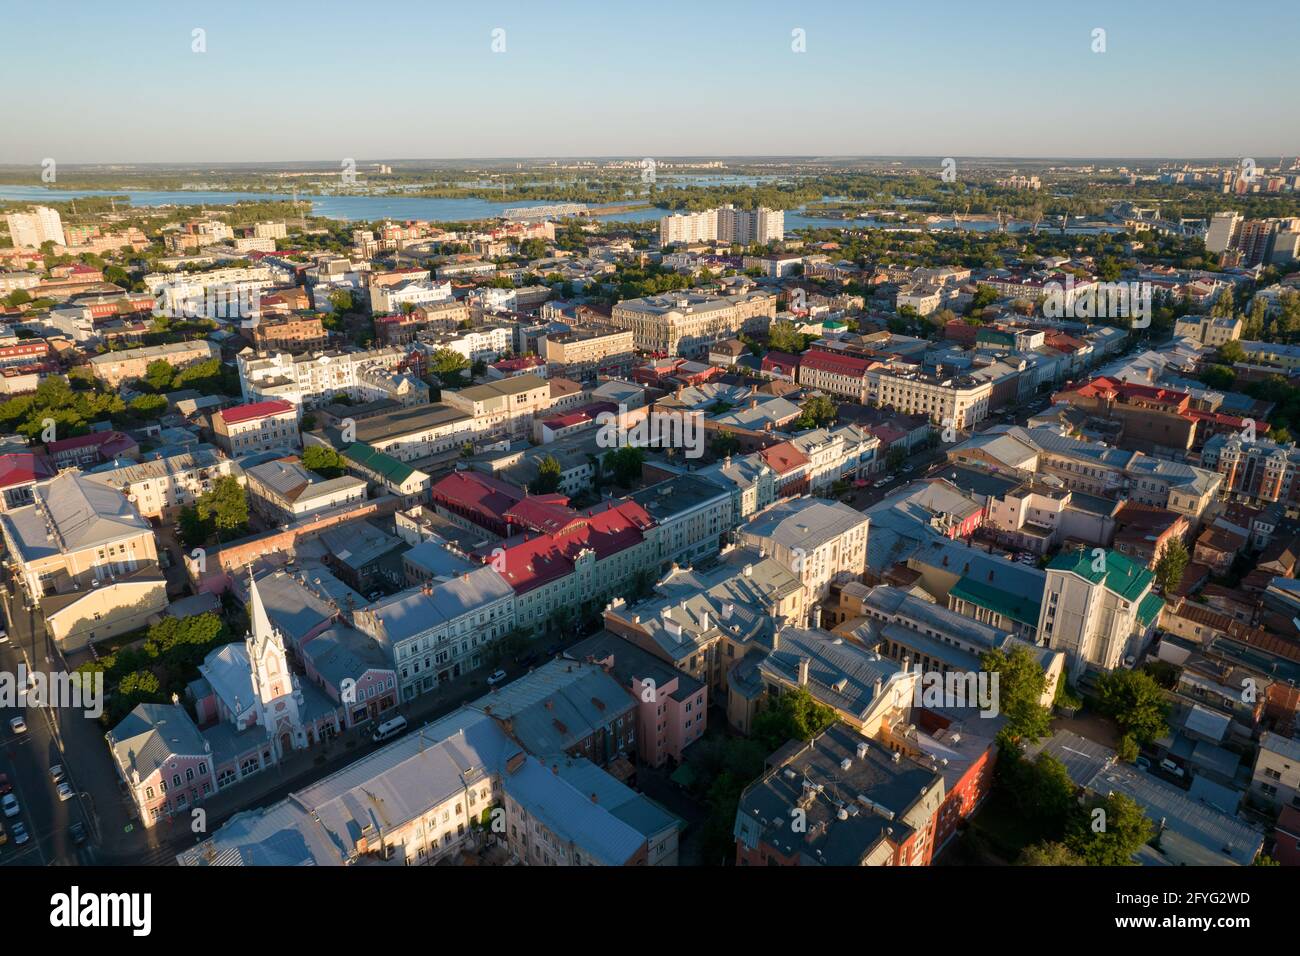 Vue aérienne sur le vieux quartier de la ville européenne, vue de drone sur les rues du centre de la ville Banque D'Images